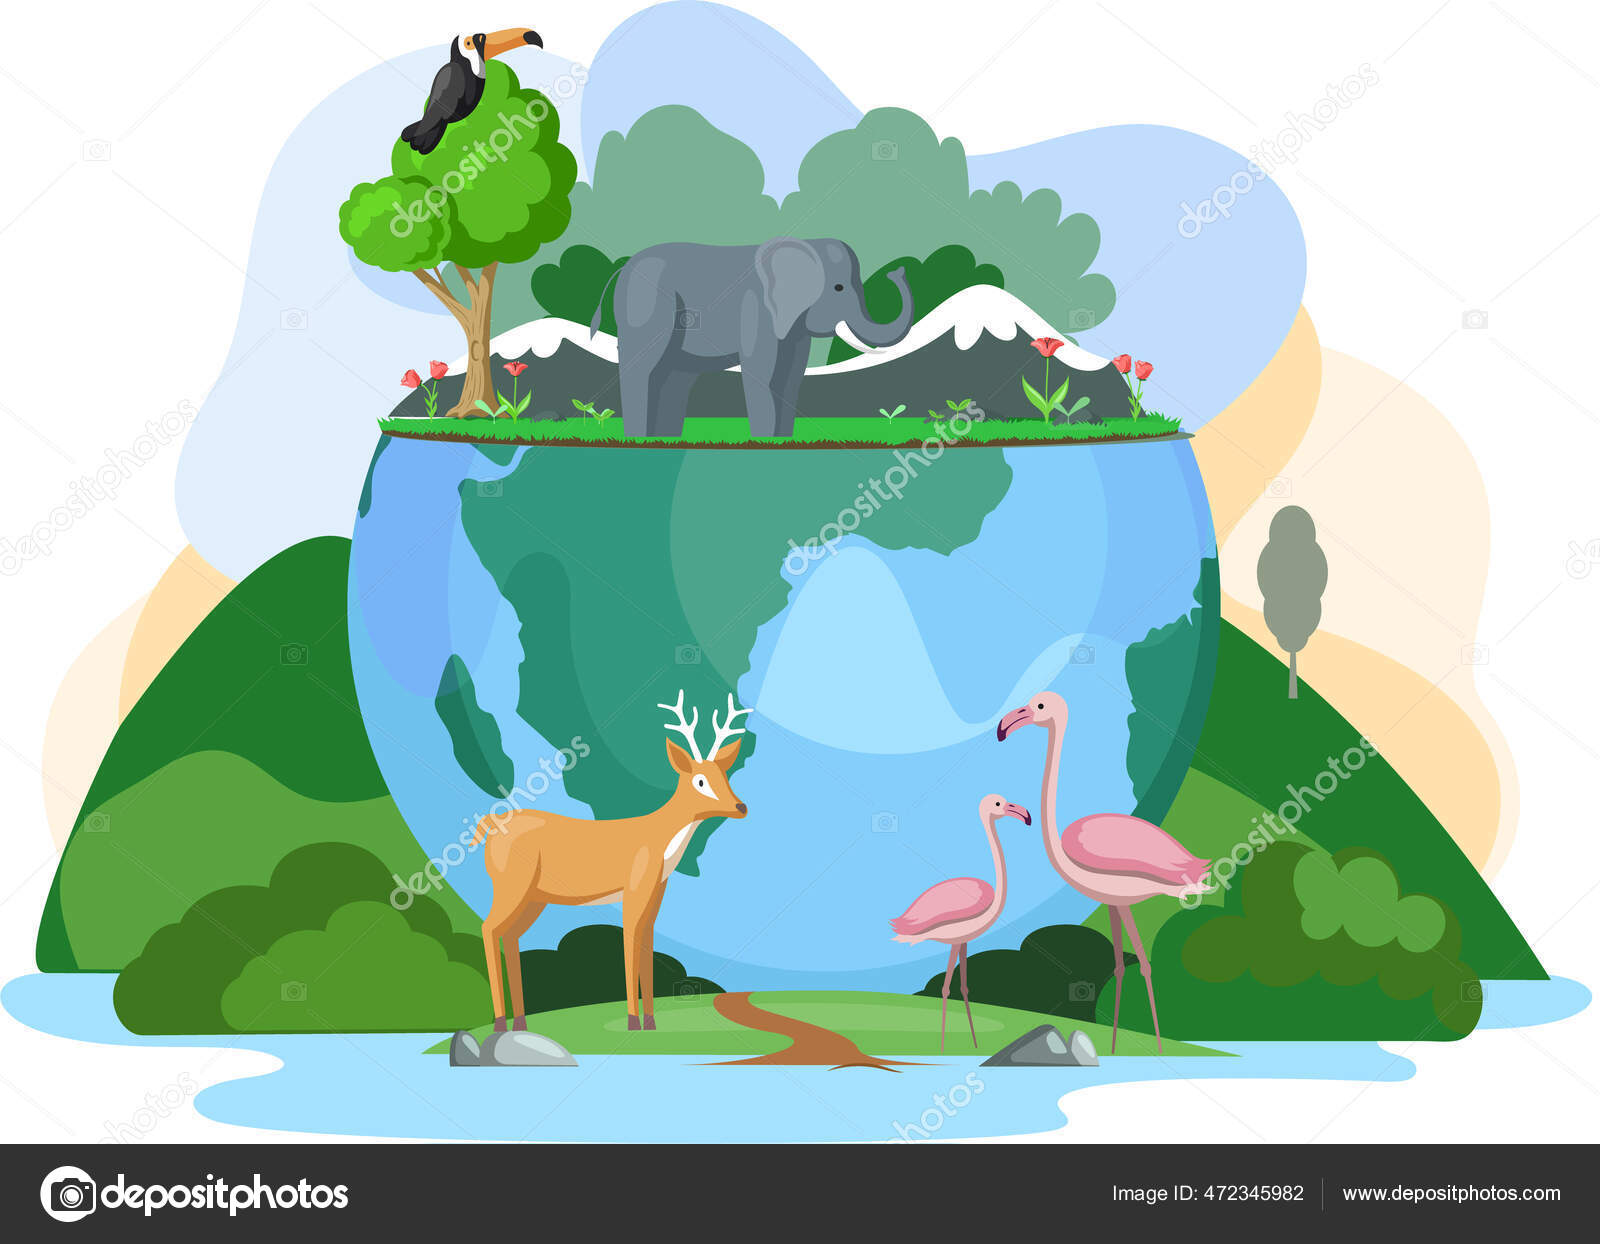 Grüne Ökosysteme der Erde. Elefant, Hirsch, Tukan und Flamingo auf